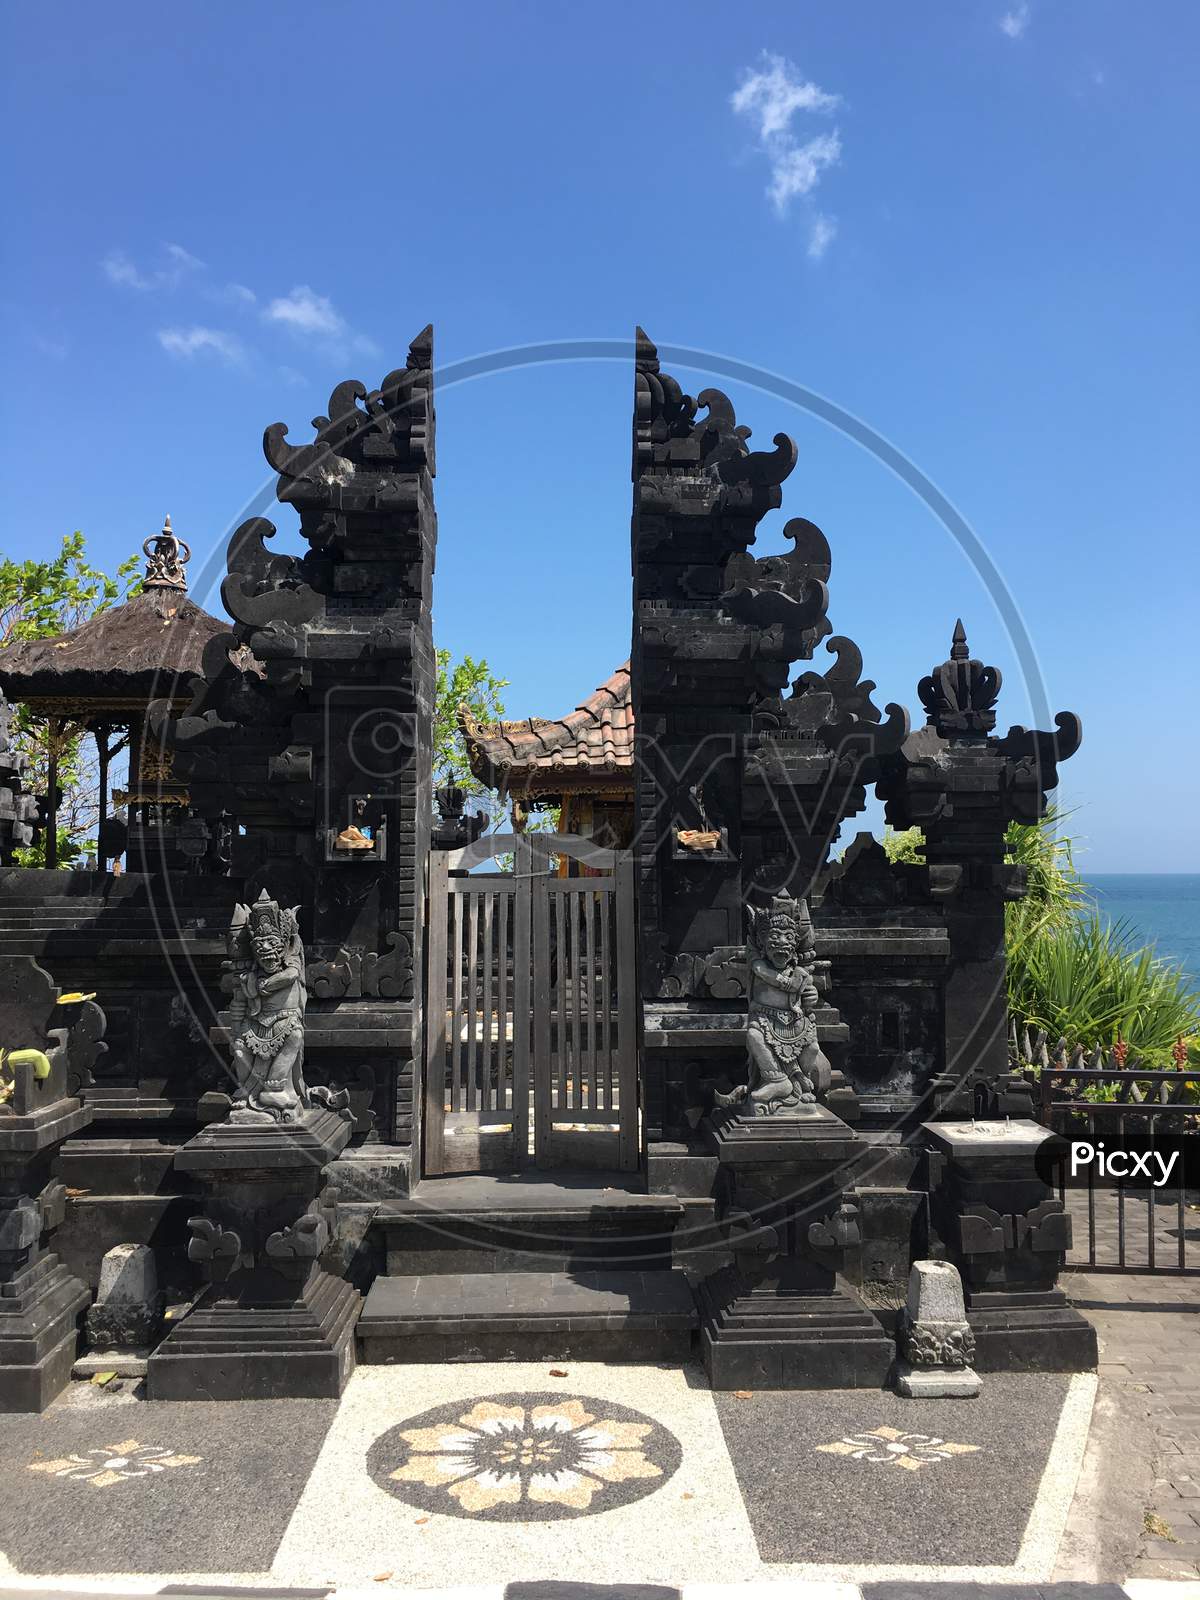 Tanah lot, Bali